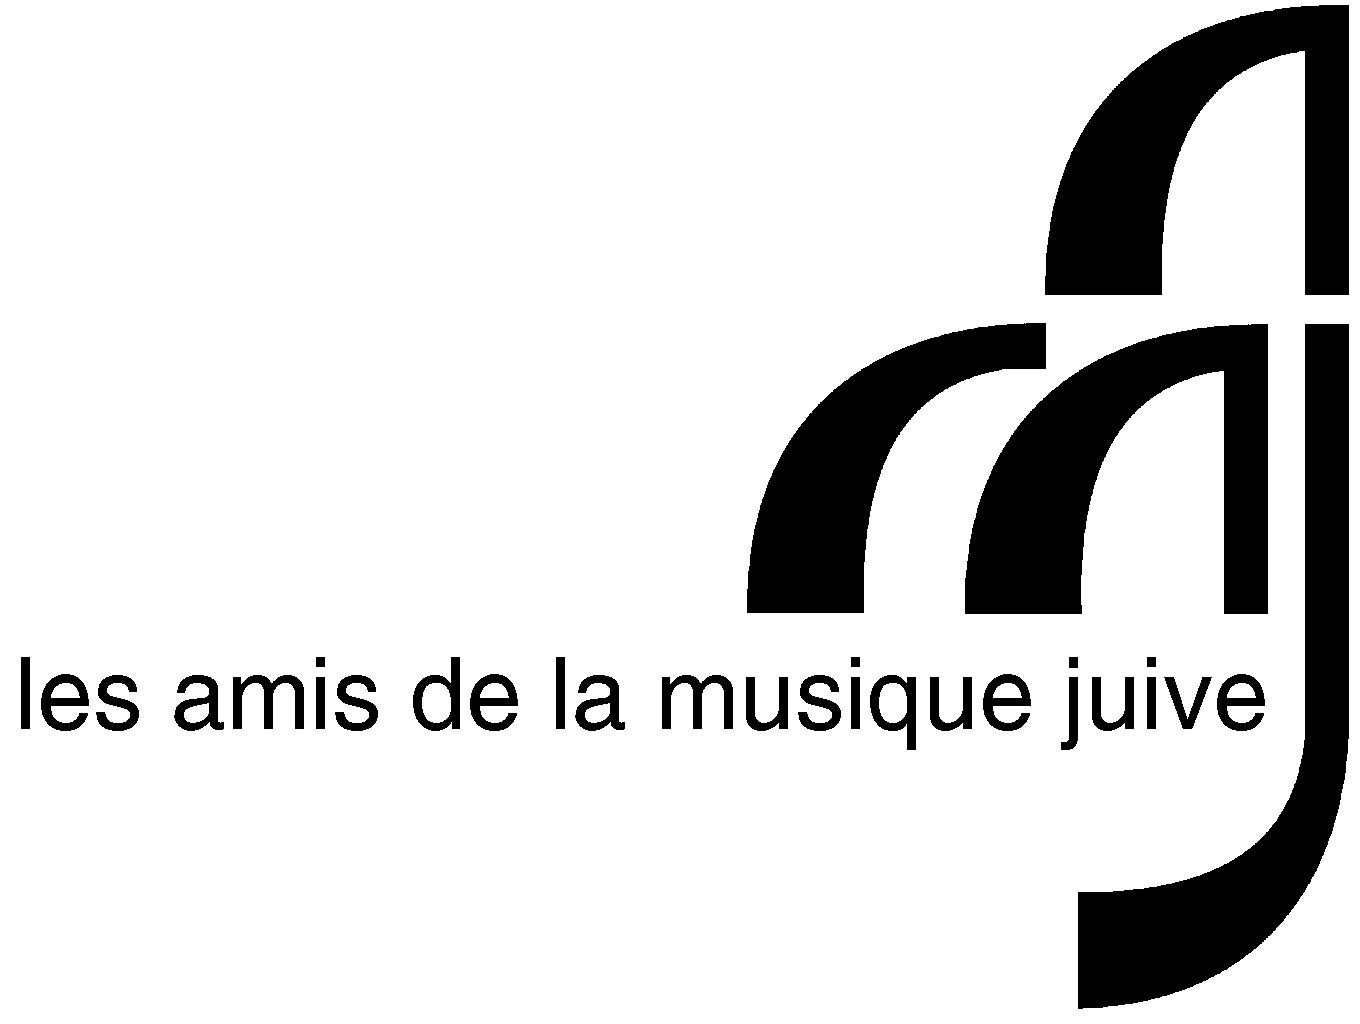 AMJ - les amis de la musique juive - Genève